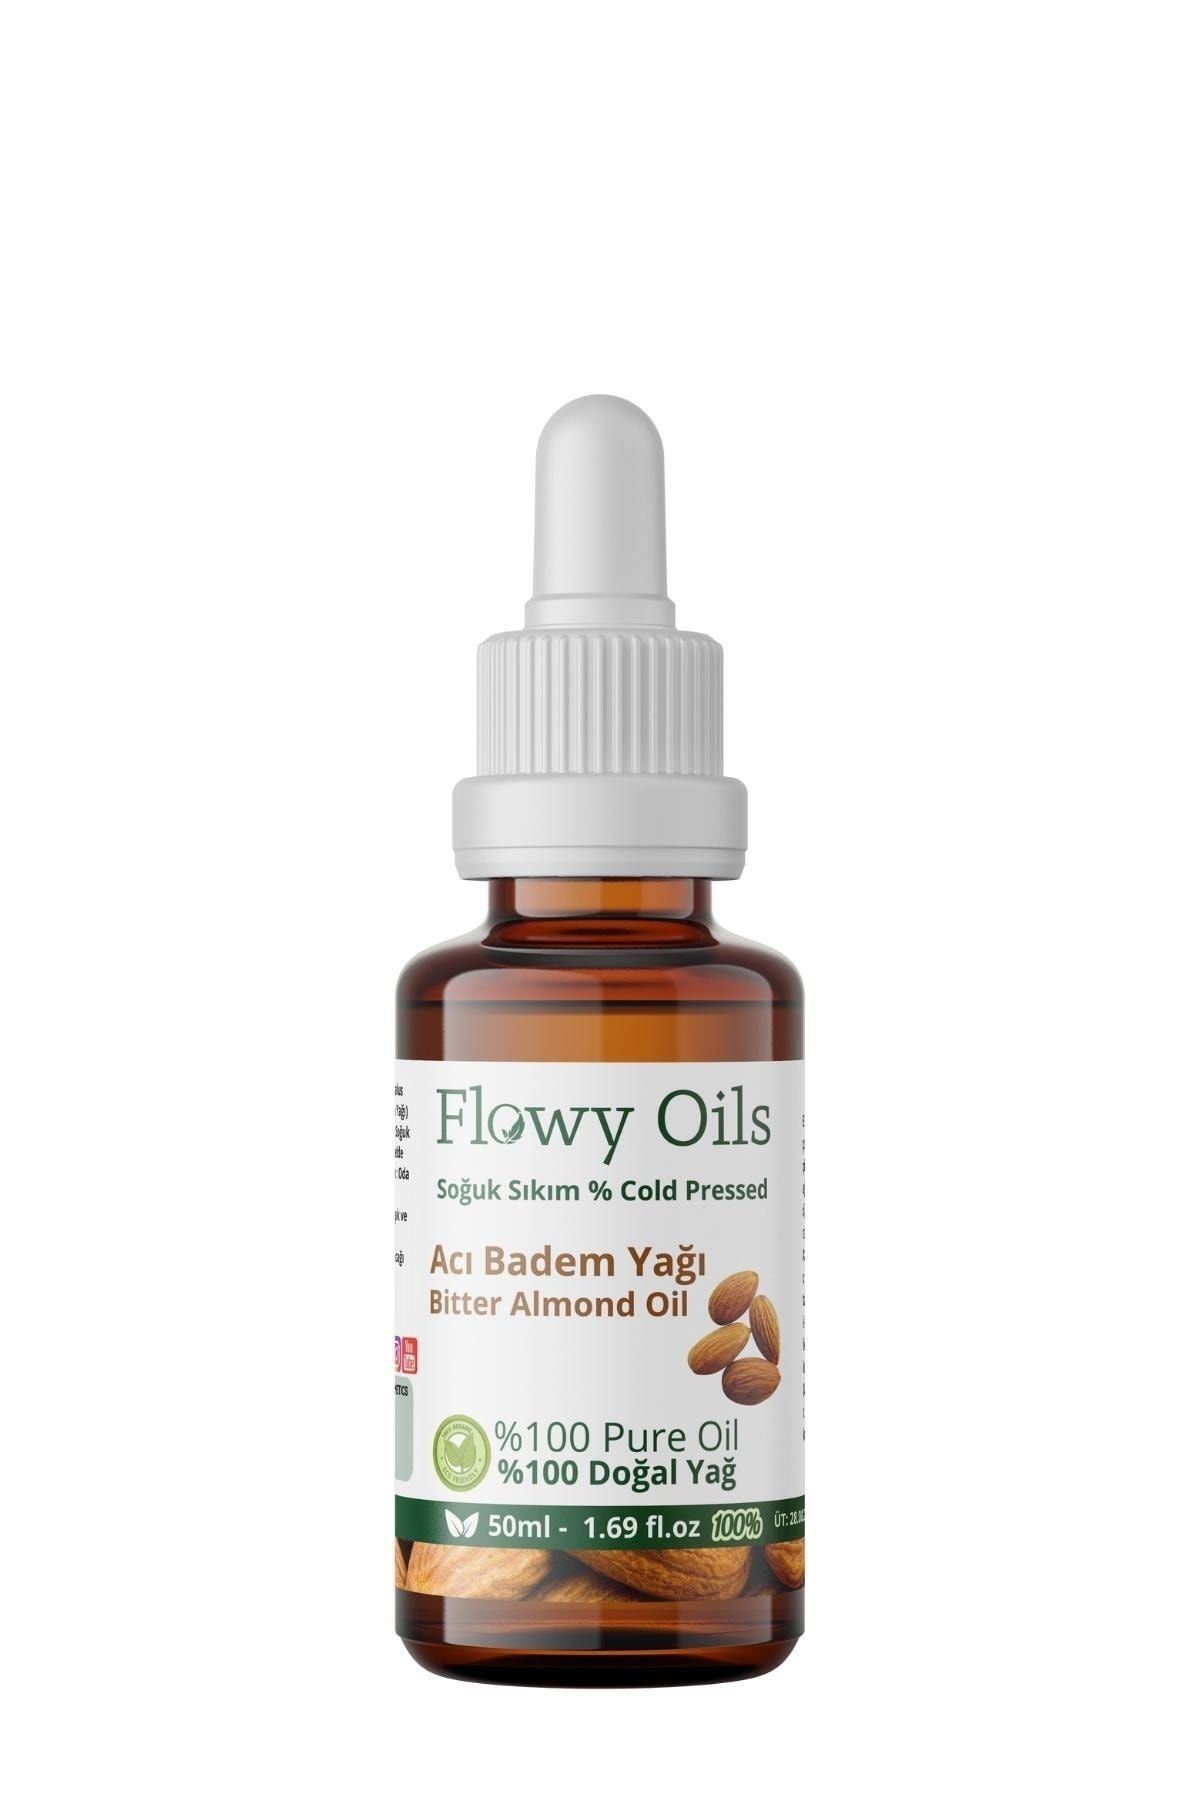 Flowy Oils Acı Badem Yağı %100 Doğal Bitkisel Sabit Yağ Bitter Almond Oil 50ml